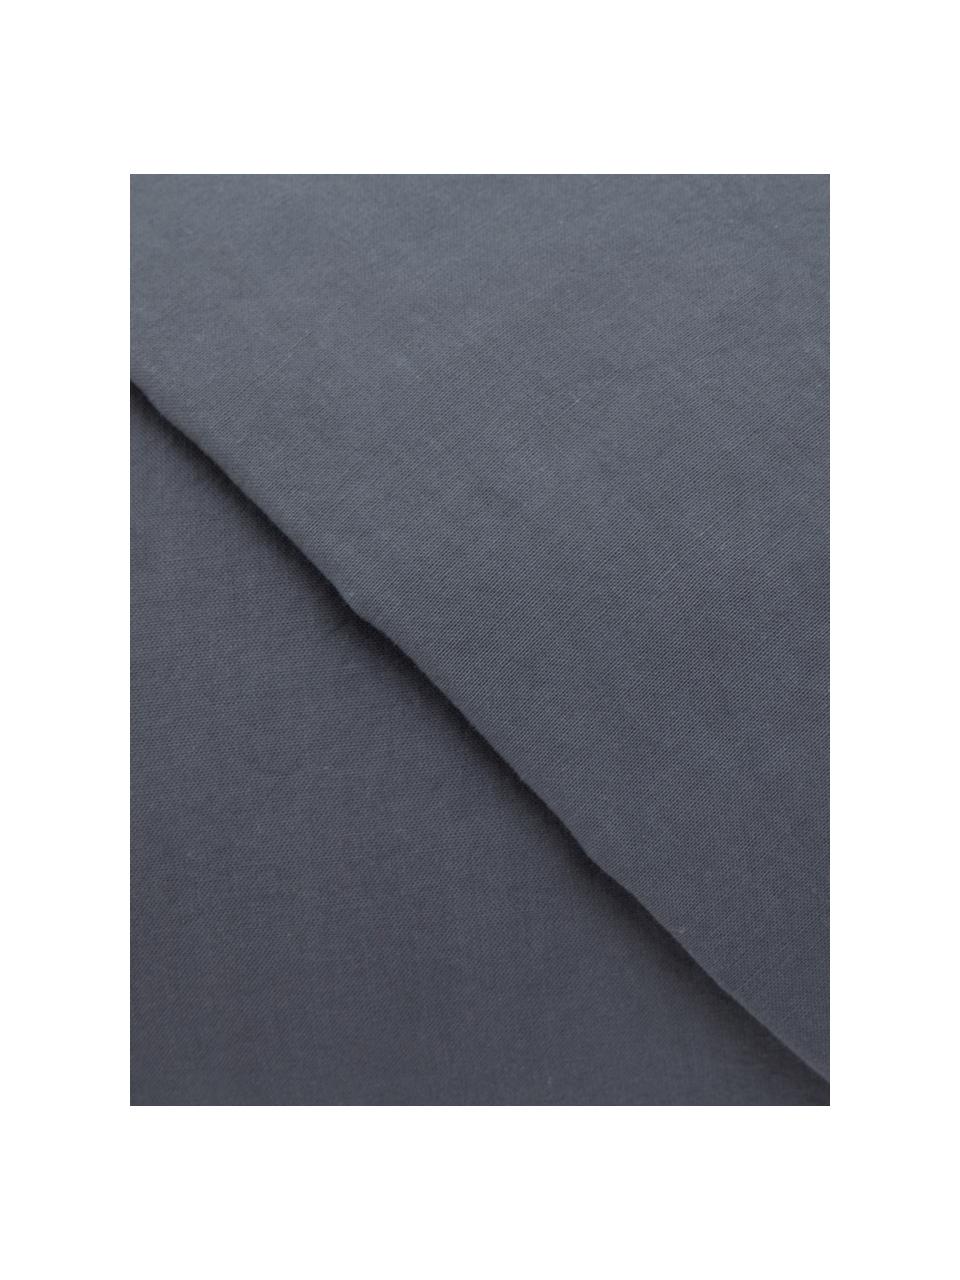 Parure copripiumino in cotone effetto stone washed Velle, Tessuto: cotone ranforce, Fronte e retro: grigio scuro, 155 x 200 cm + 1 federa 50 x 80 cm